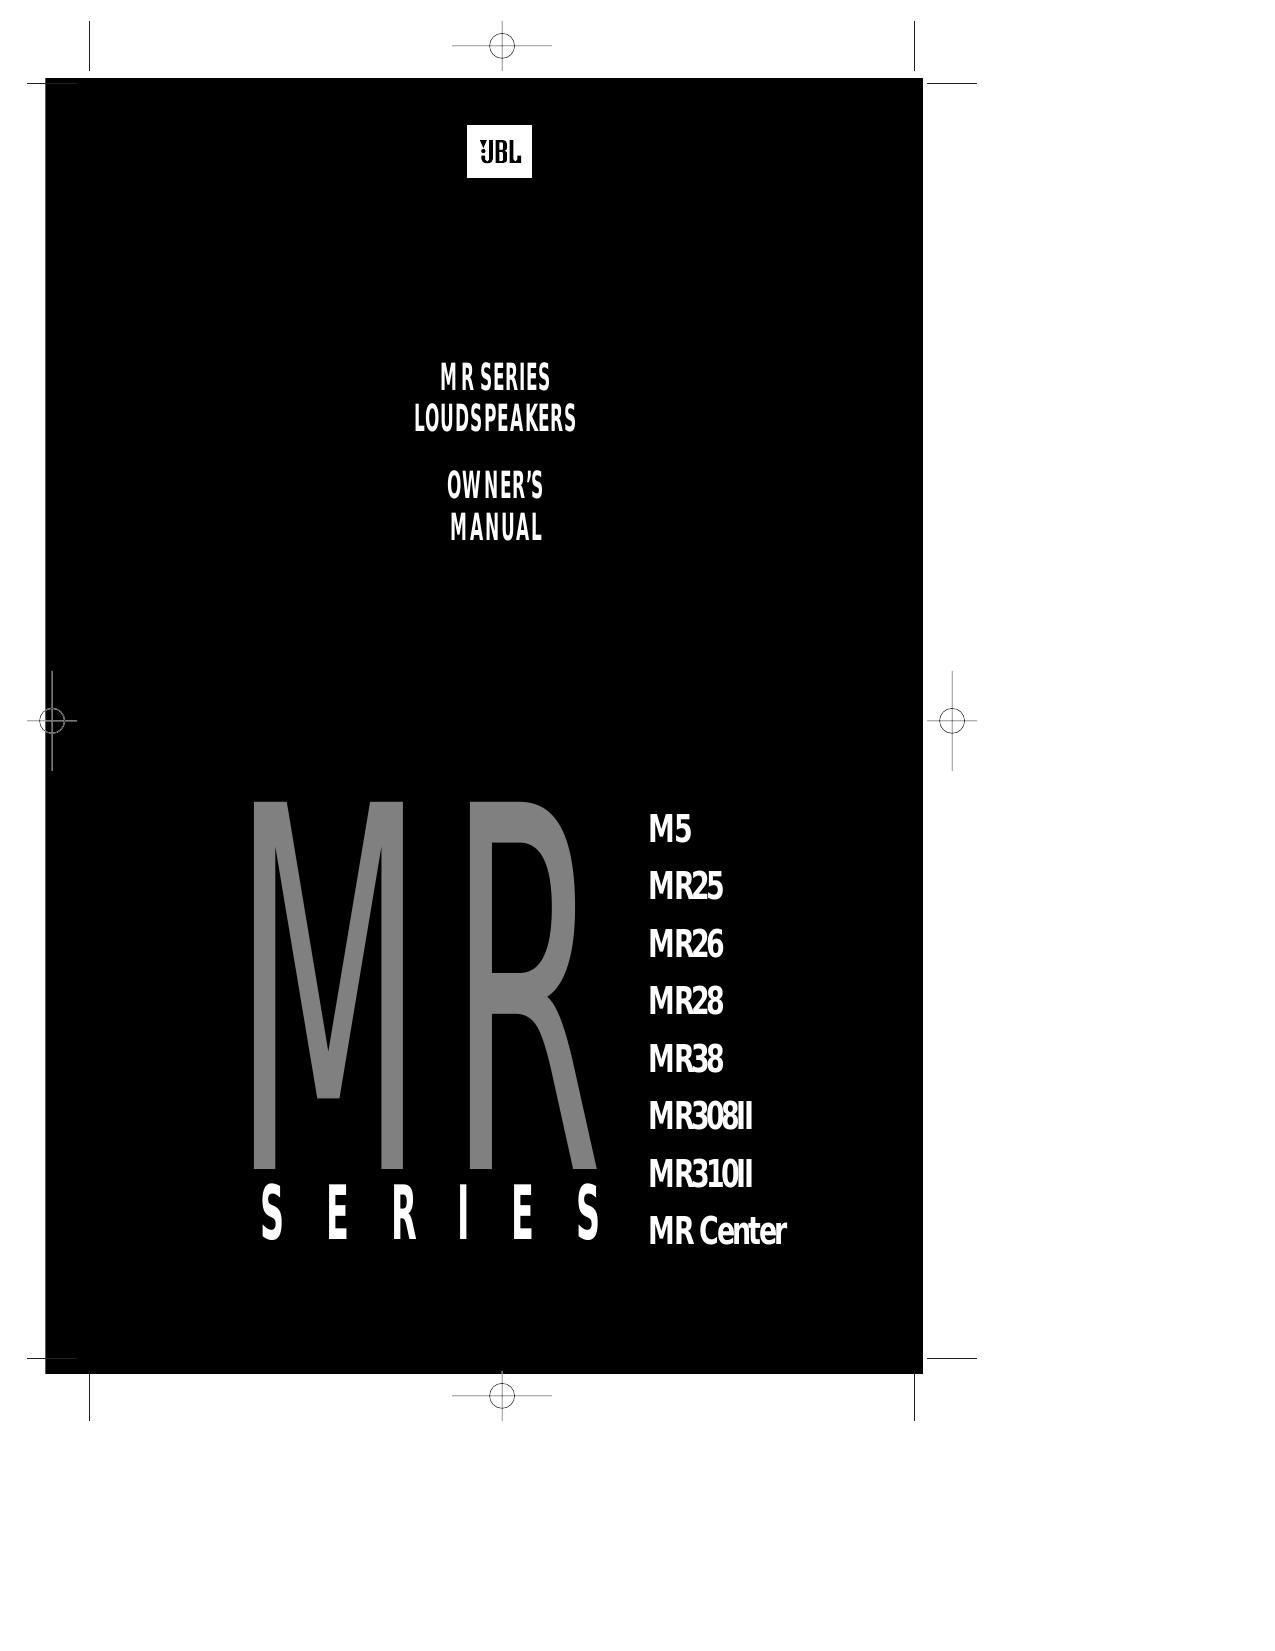 Jbl MR Series Owners Manual